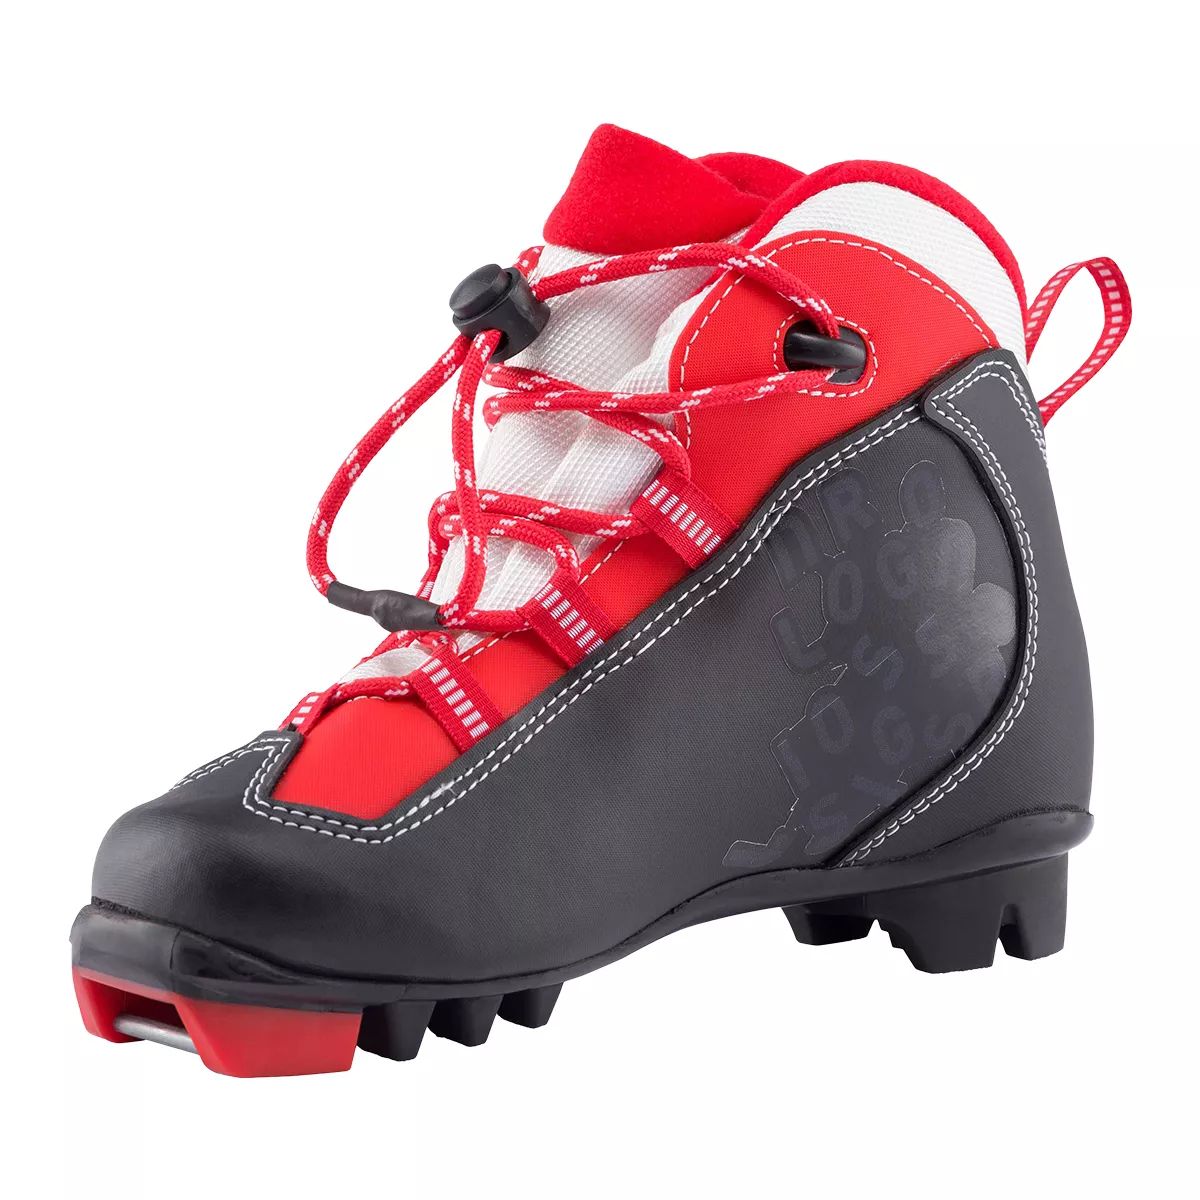 Image of Rossignol X1 Junior Ski Boots 2020/21